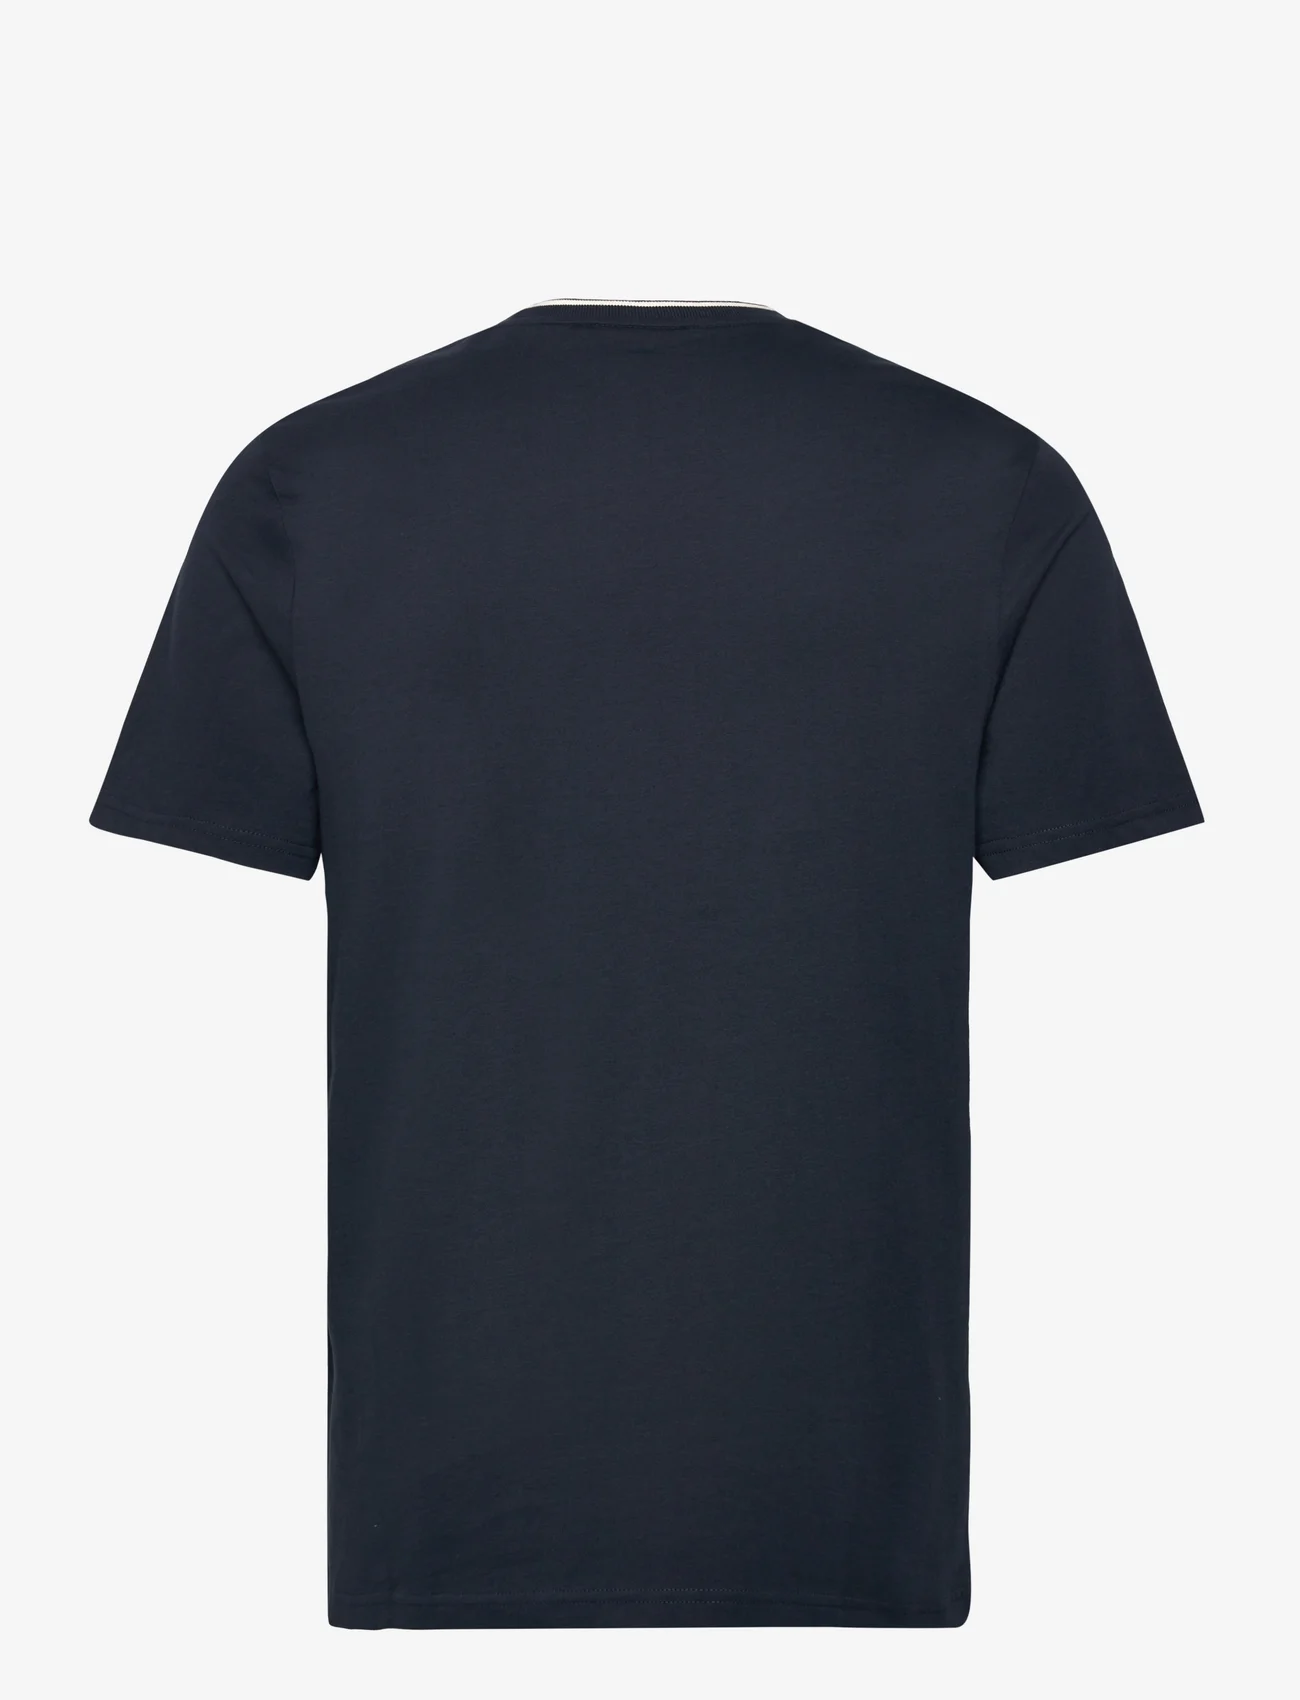 Lyle & Scott - Tipped T-shirt - laagste prijzen - x295 dark navy/ chalk - 1